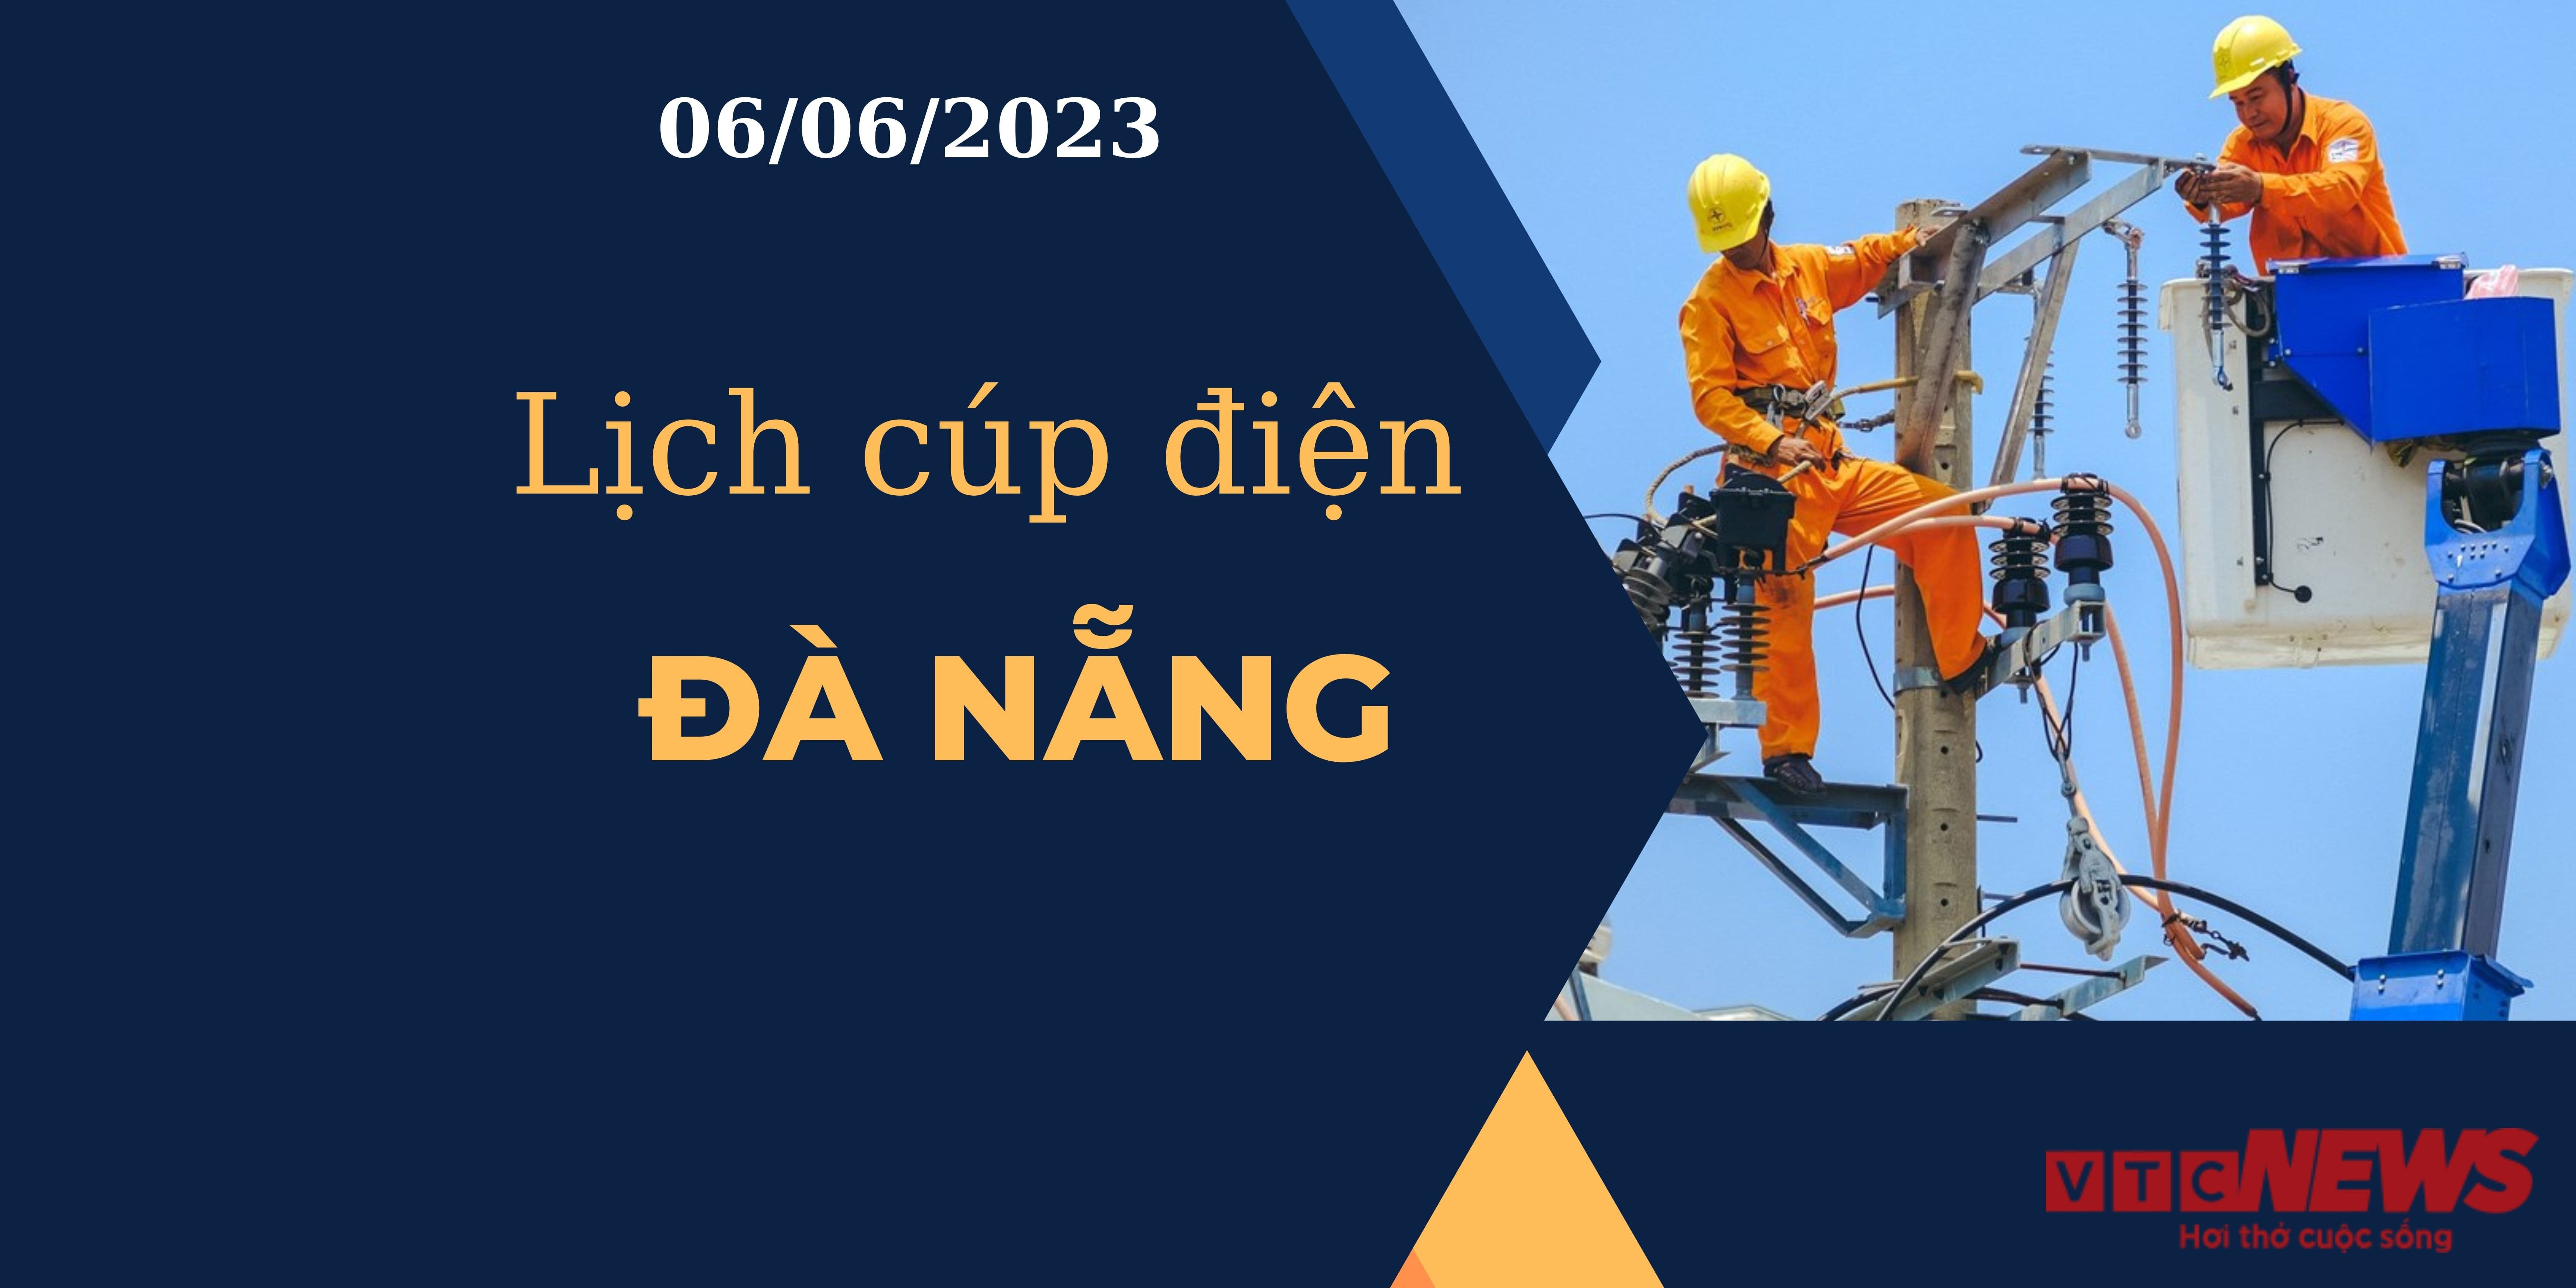 Lịch cúp điện hôm nay tại Đà Nẵng ngày 06/06/2023 - 1